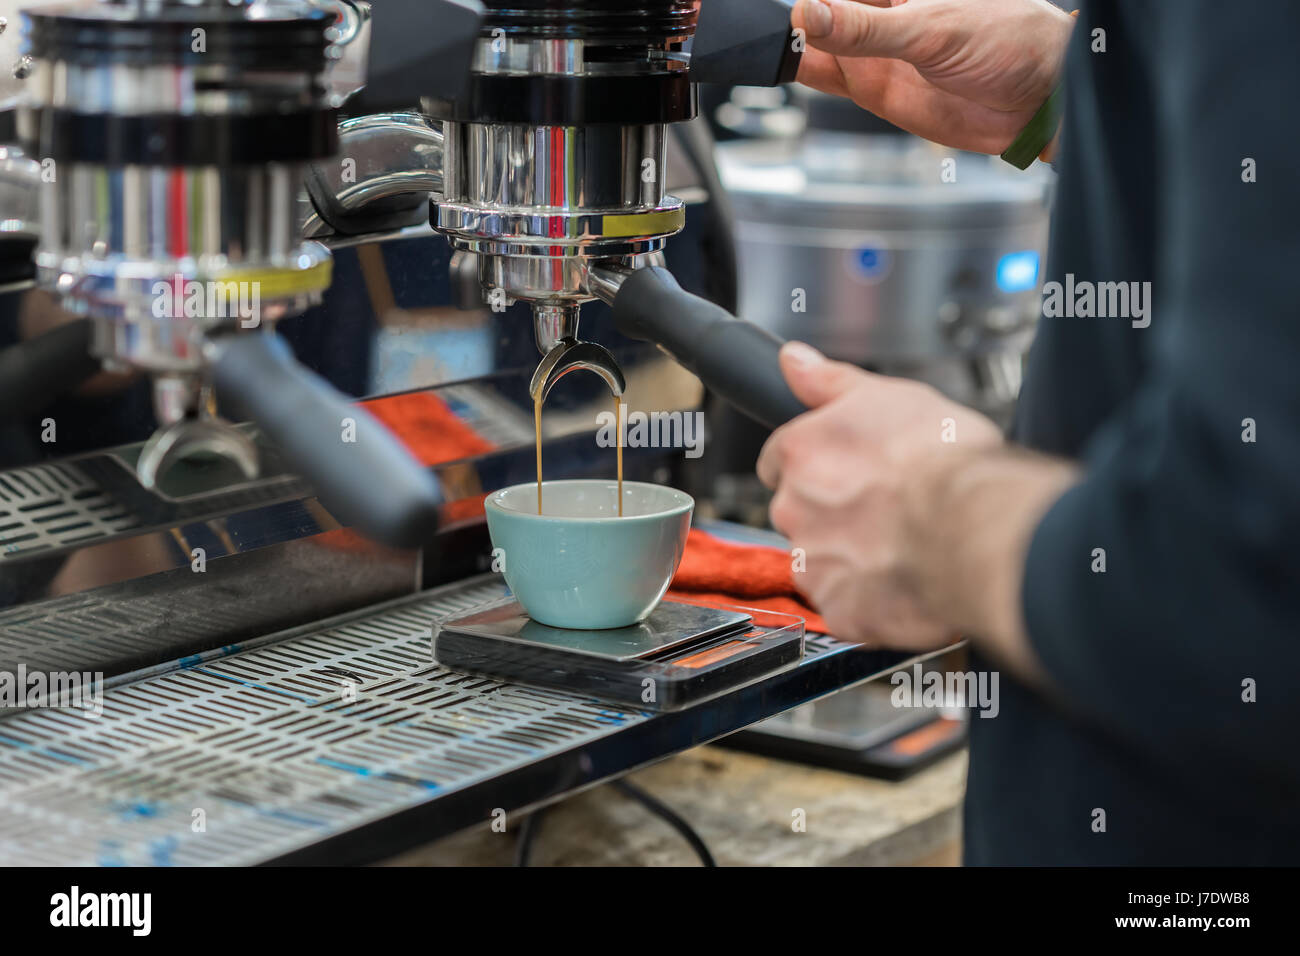 Vue rapprochée mains de barista professionnel travaillant dans la préparation de café espresso, en attente de machine à café pour terminer verser boisson fraîche dans la cuvette en porcelaine Banque D'Images